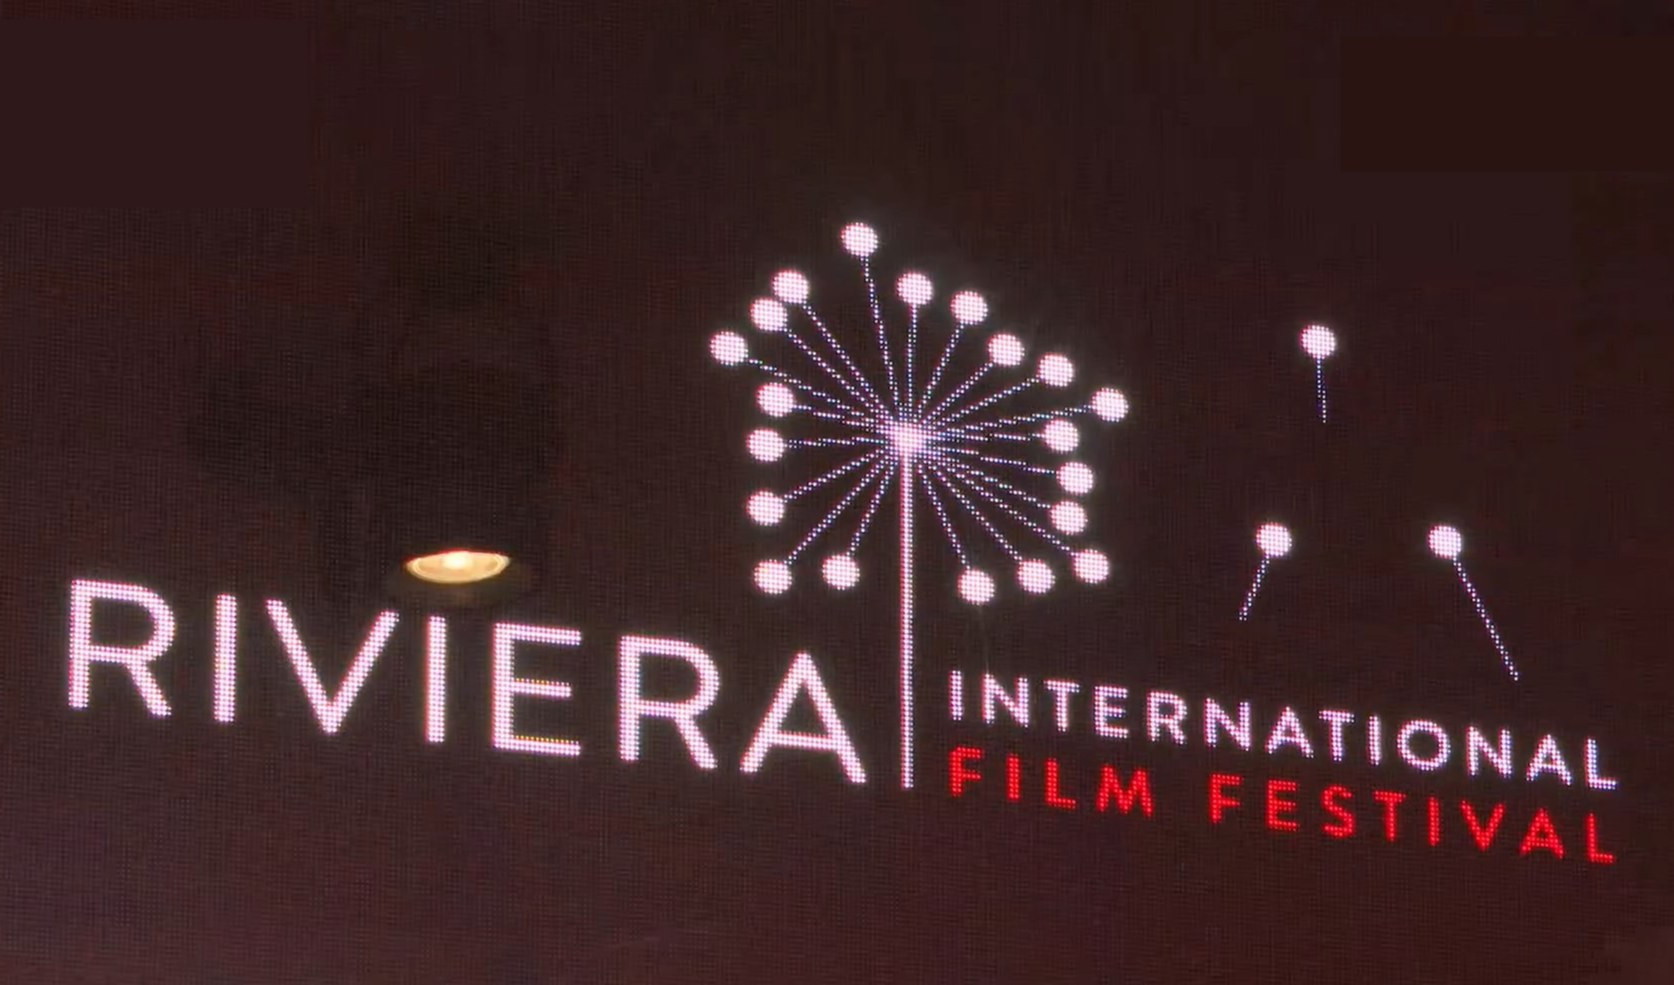 Riviera Film Festival, dalle rising stars del cinema italiano ad Anna Favella (puntata 1)